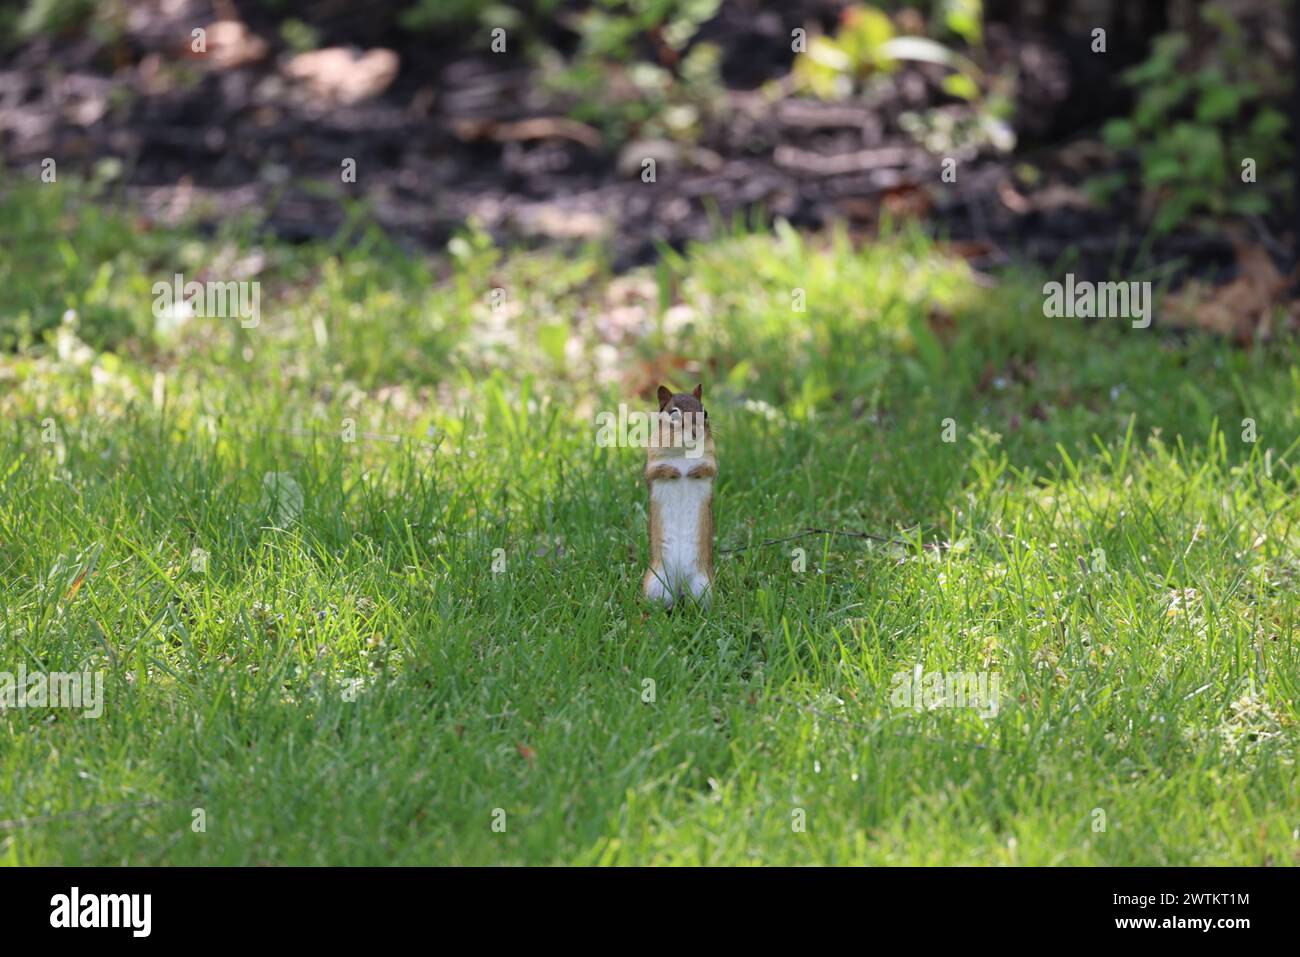 Un petit chipmunk perché dans un champ verdoyant herbeux Banque D'Images